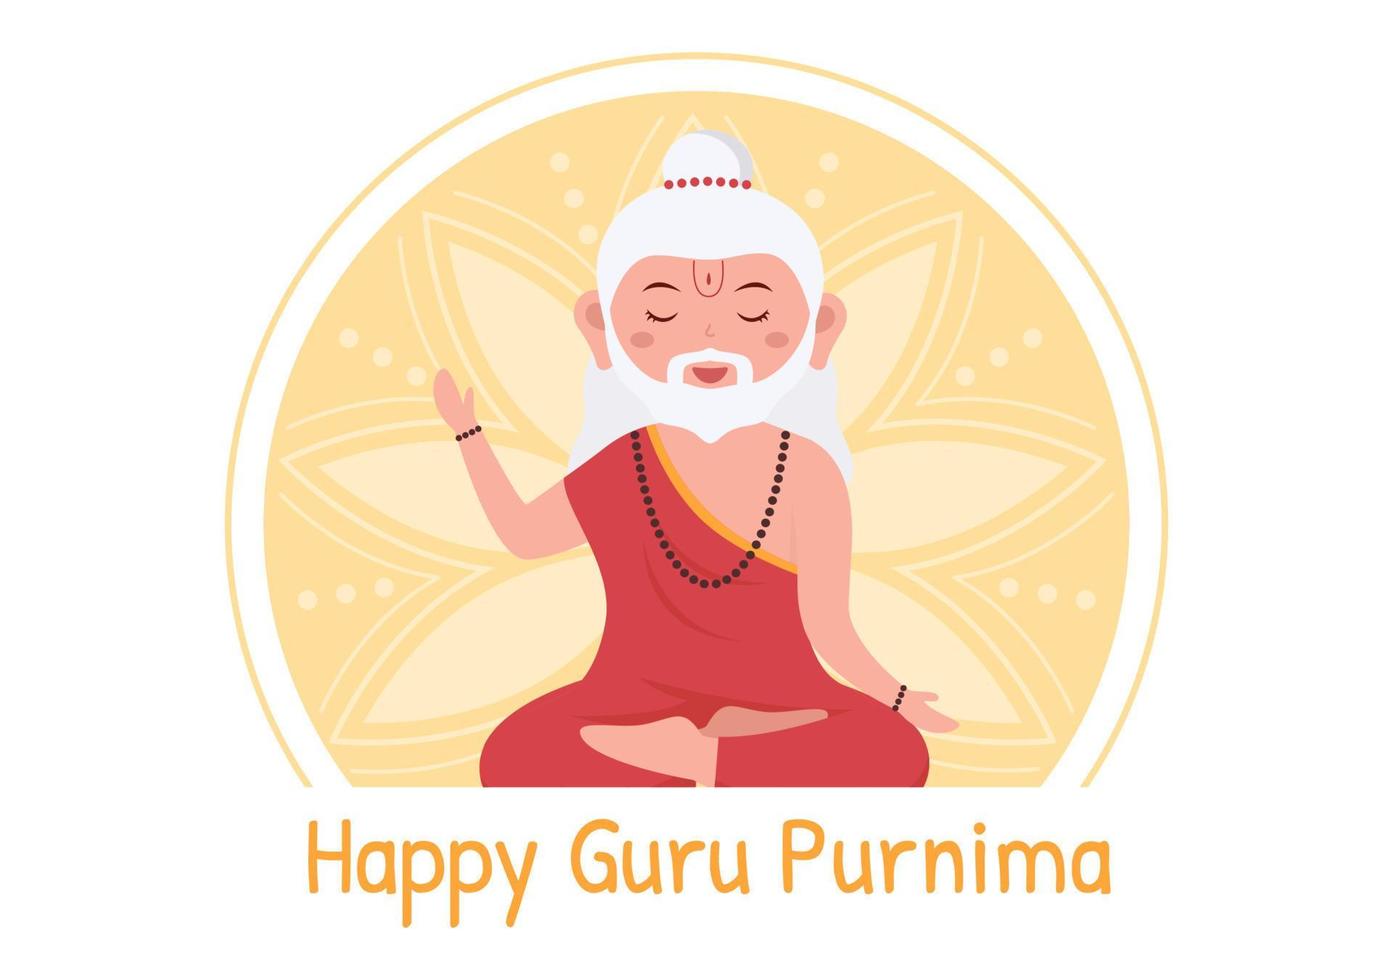 glücklicher guru purnima des indischen festivals für spirituelle und akademische lehrer in flacher karikaturblumenhintergrundillustration vektor